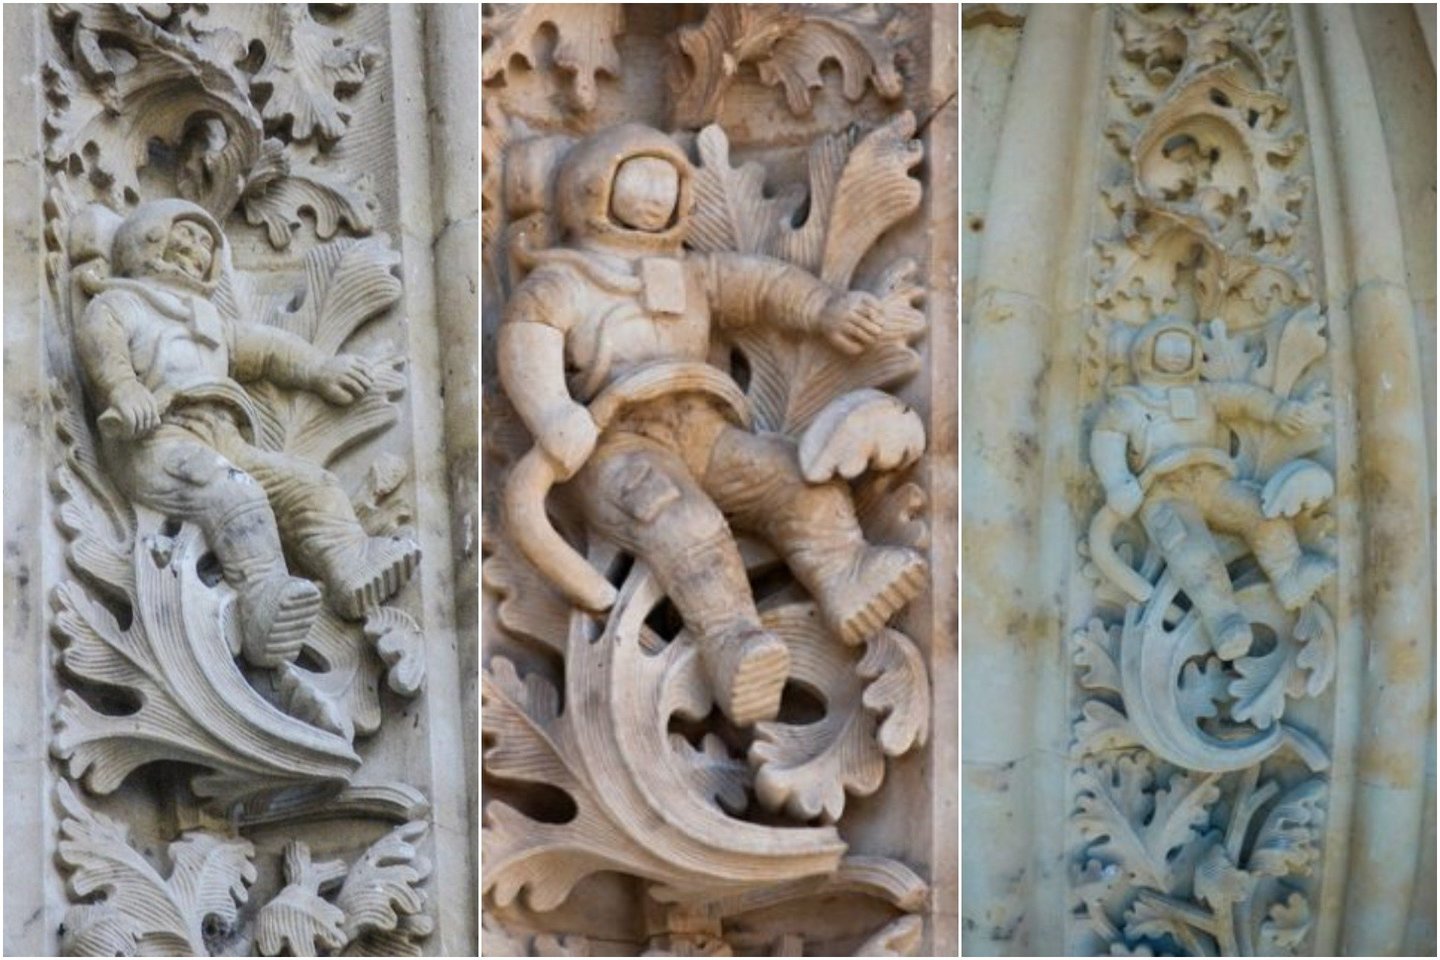  Cetadral Nueva vadinama XVI a. Ispanijos katedra (liet. Naujoji katedra) puikuojasi keista šiuolaikine detale – fasade šalia įėjimo išdrožinėtu šalmą dėvinčiu astronautu.